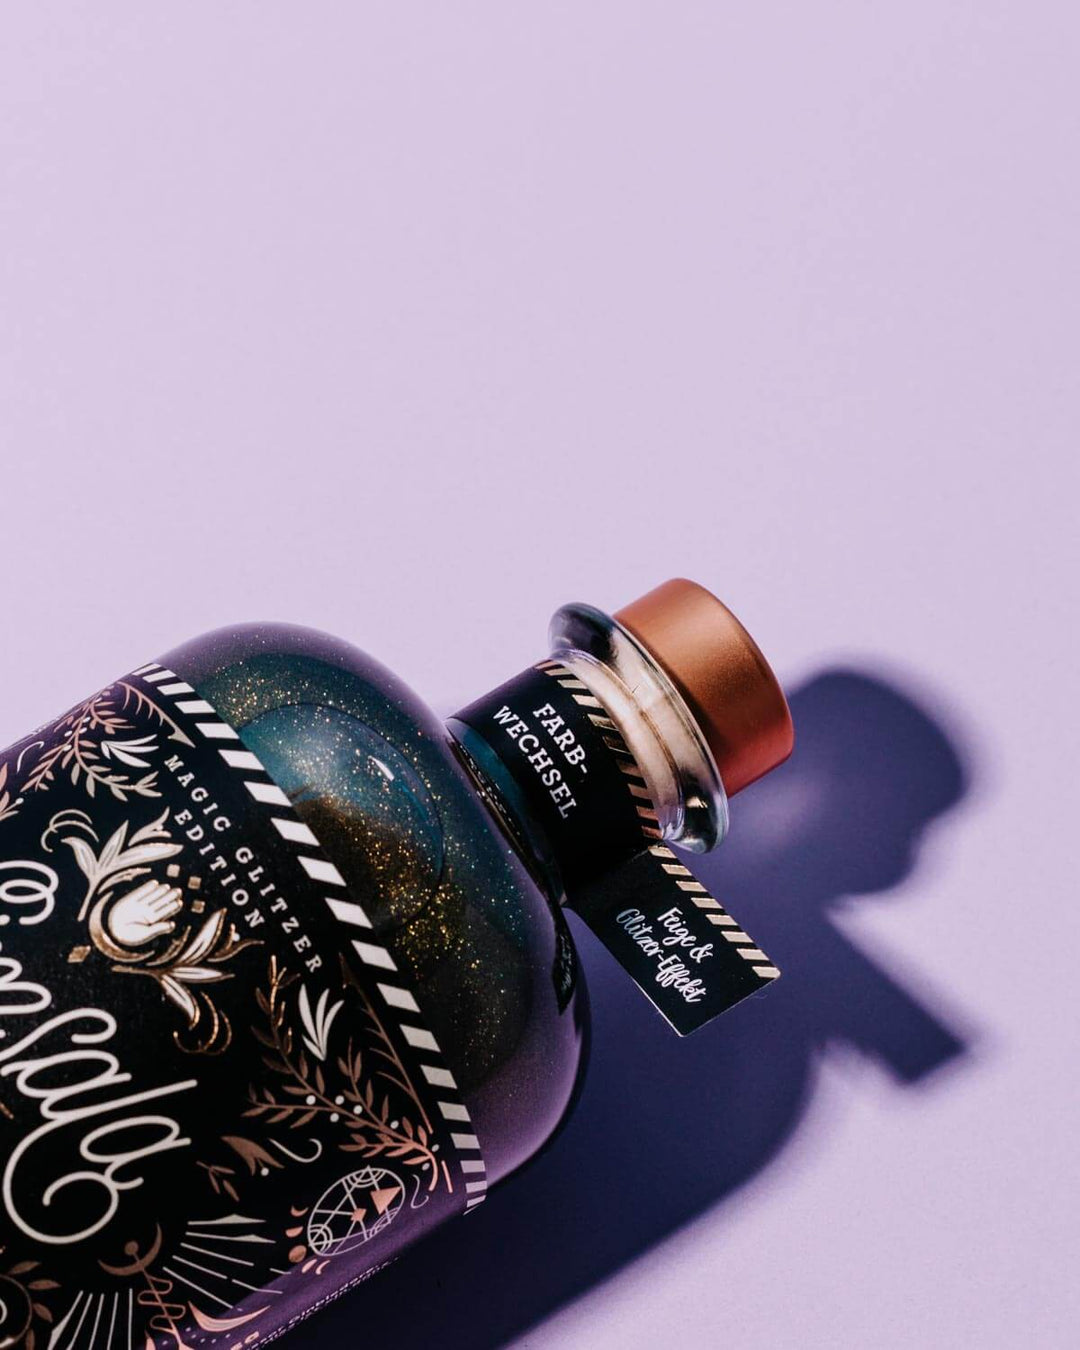 Das gold schwarze Etikett unseres glitzernden Simsala Gins mit Farbwechsel und dem Fähnchen am Flaschenhals auf dem das Botanical "Feige" und "Farbwechsel" steht. 